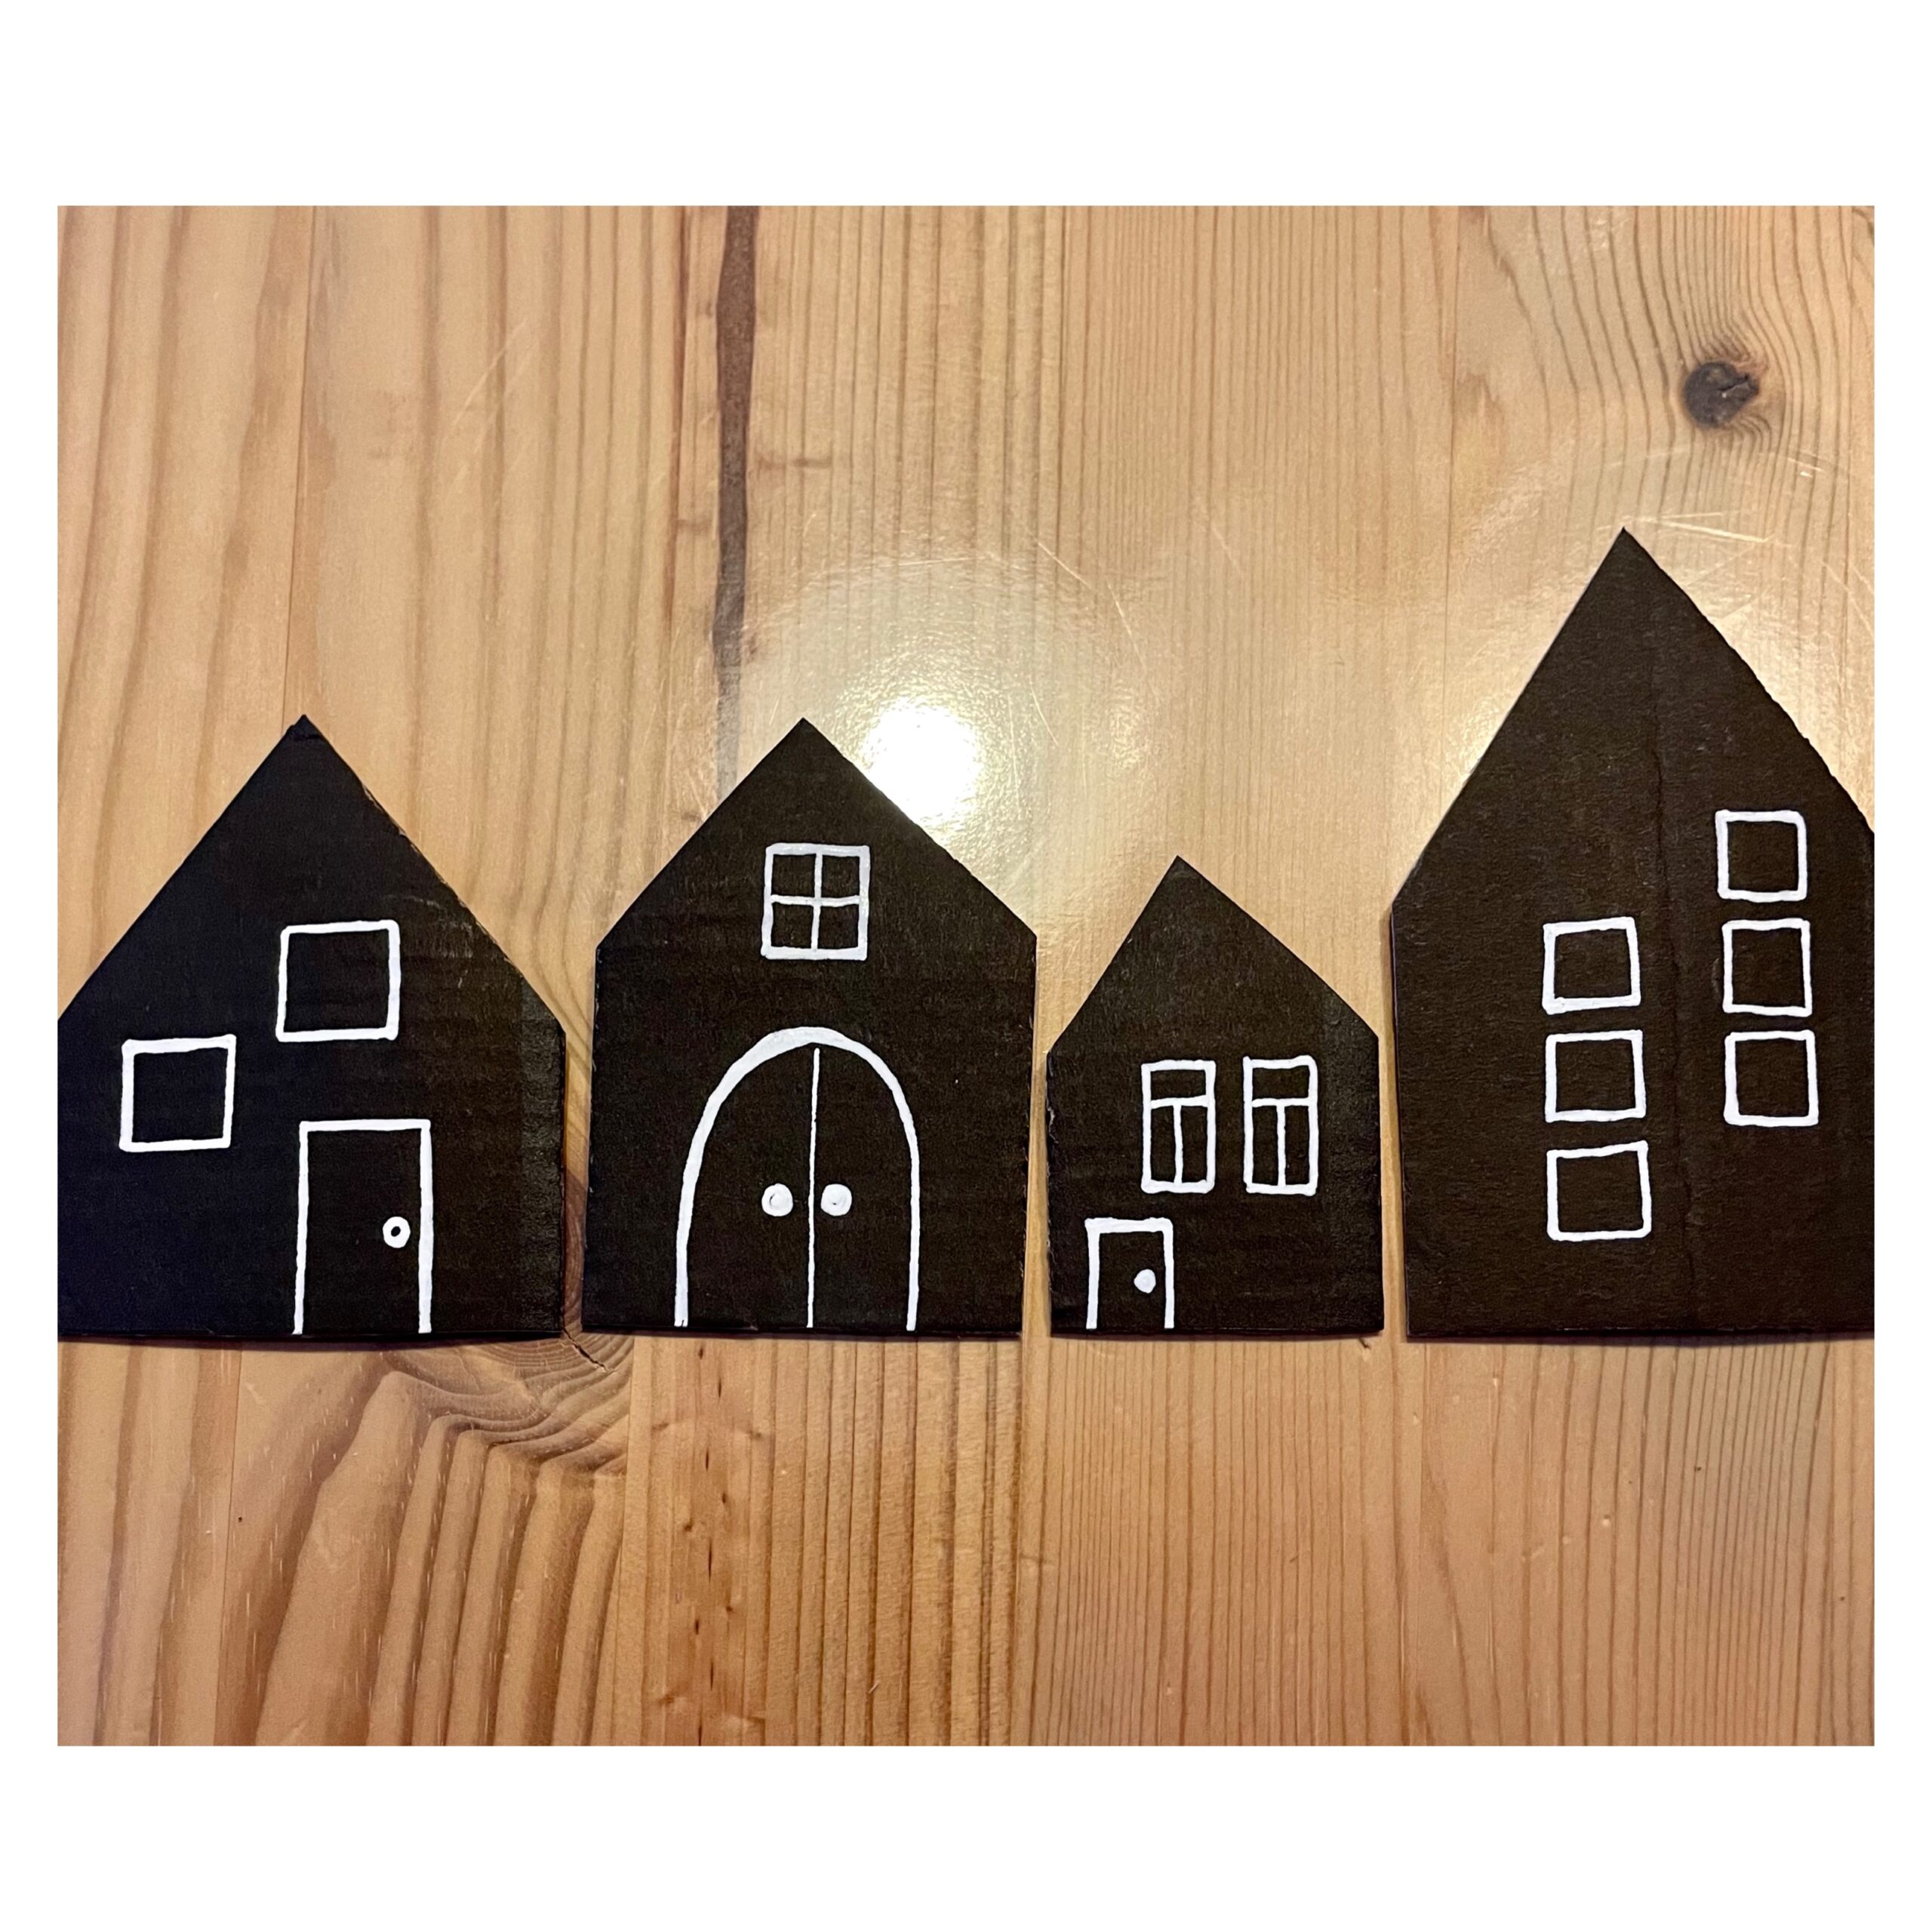 Bild zum Schritt 9 für das Bastel- und DIY-Abenteuer für Kinder: 'Reiht die Häuser nebeneinander und gestaltet so eine große Karte...'